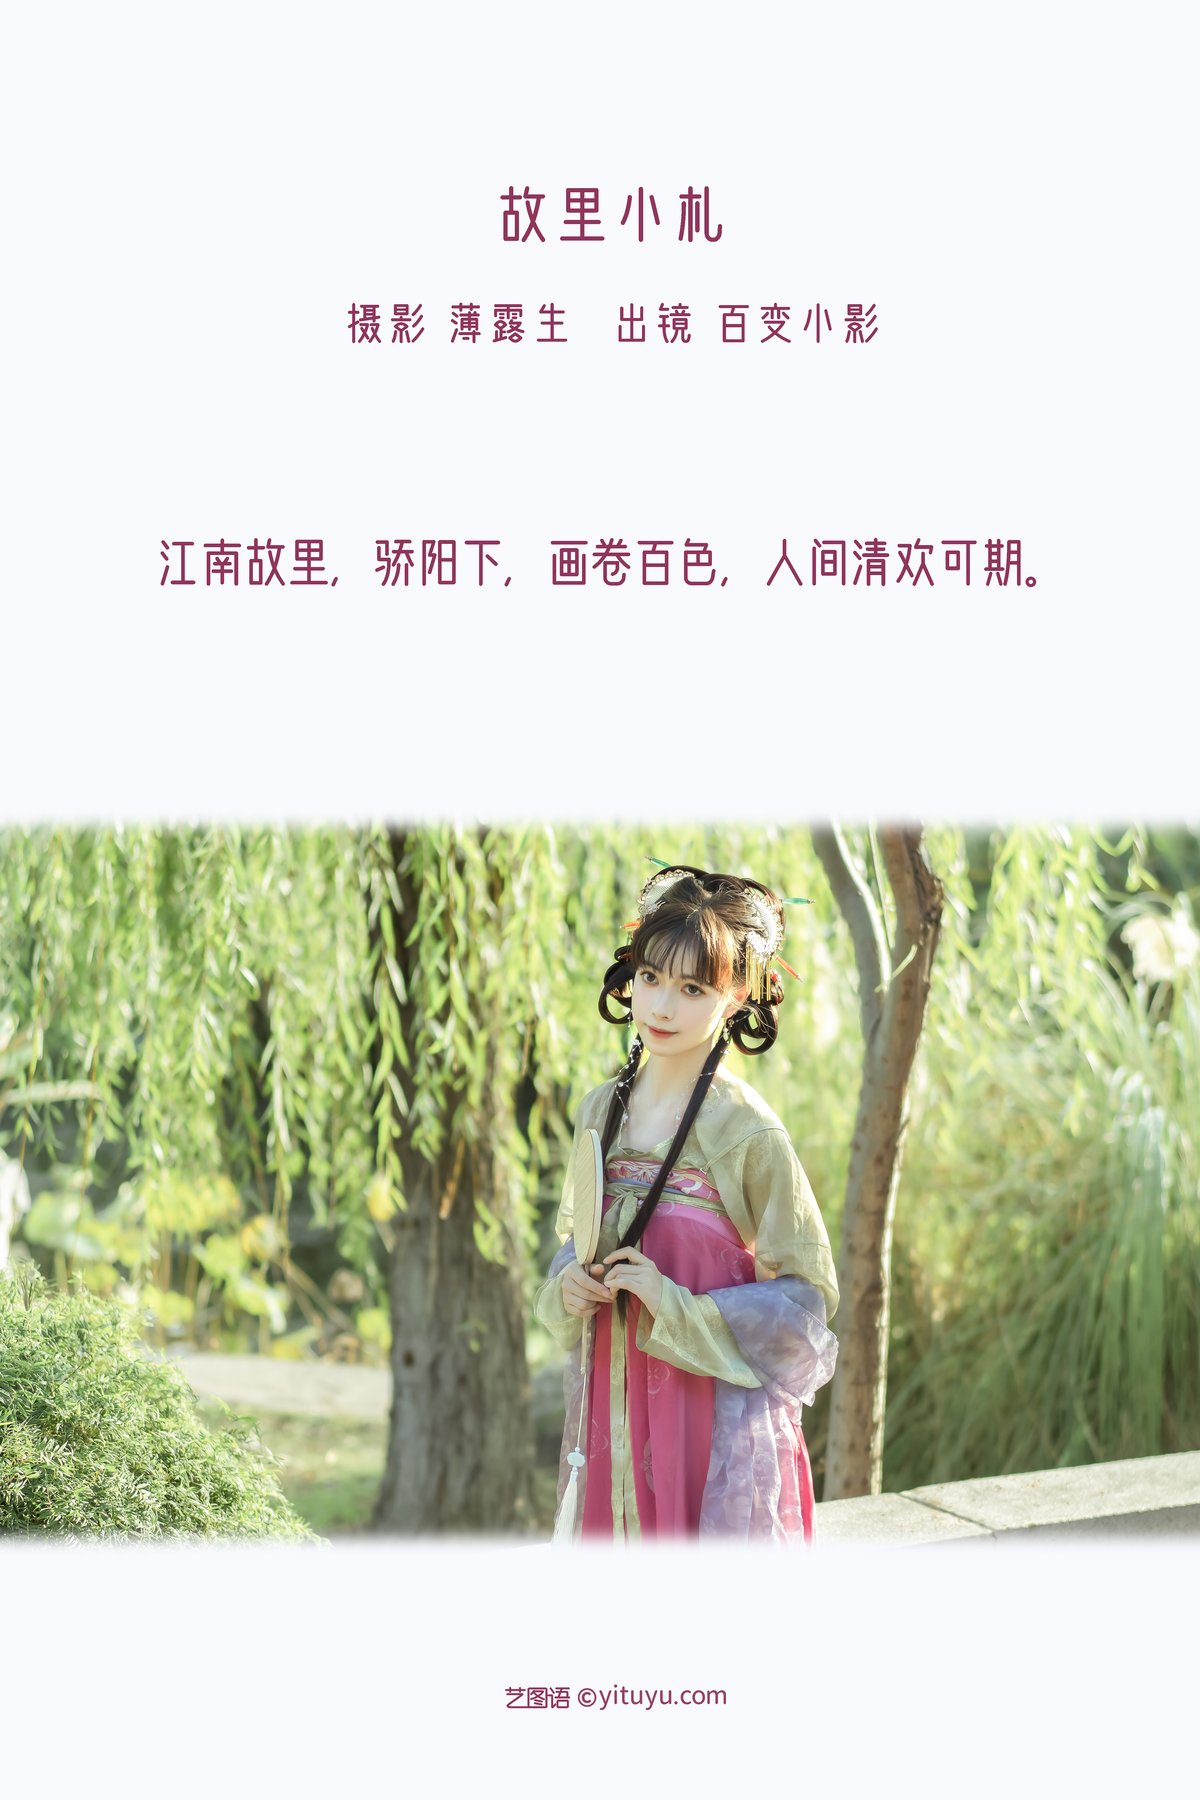 YiTuYu艺图语 Vol 3004 Bai Bian Xiao Ying 0001 3067211041.jpg